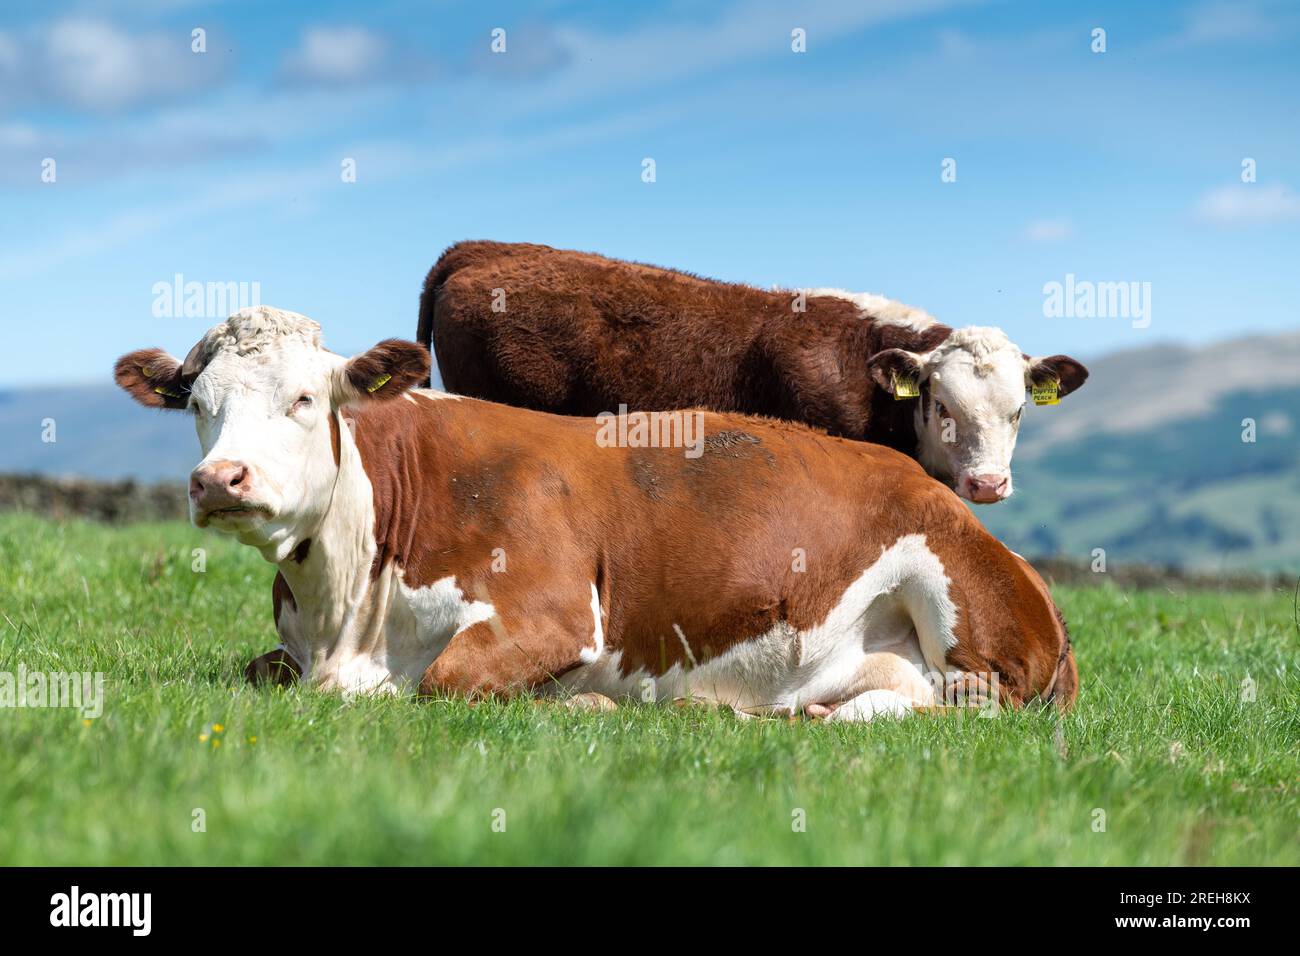 Hereford Rinder, eine einheimische britische Rinderrasse, saßen auf einer üppigen Berglandweide in Cumbria, Großbritannien. Stockfoto